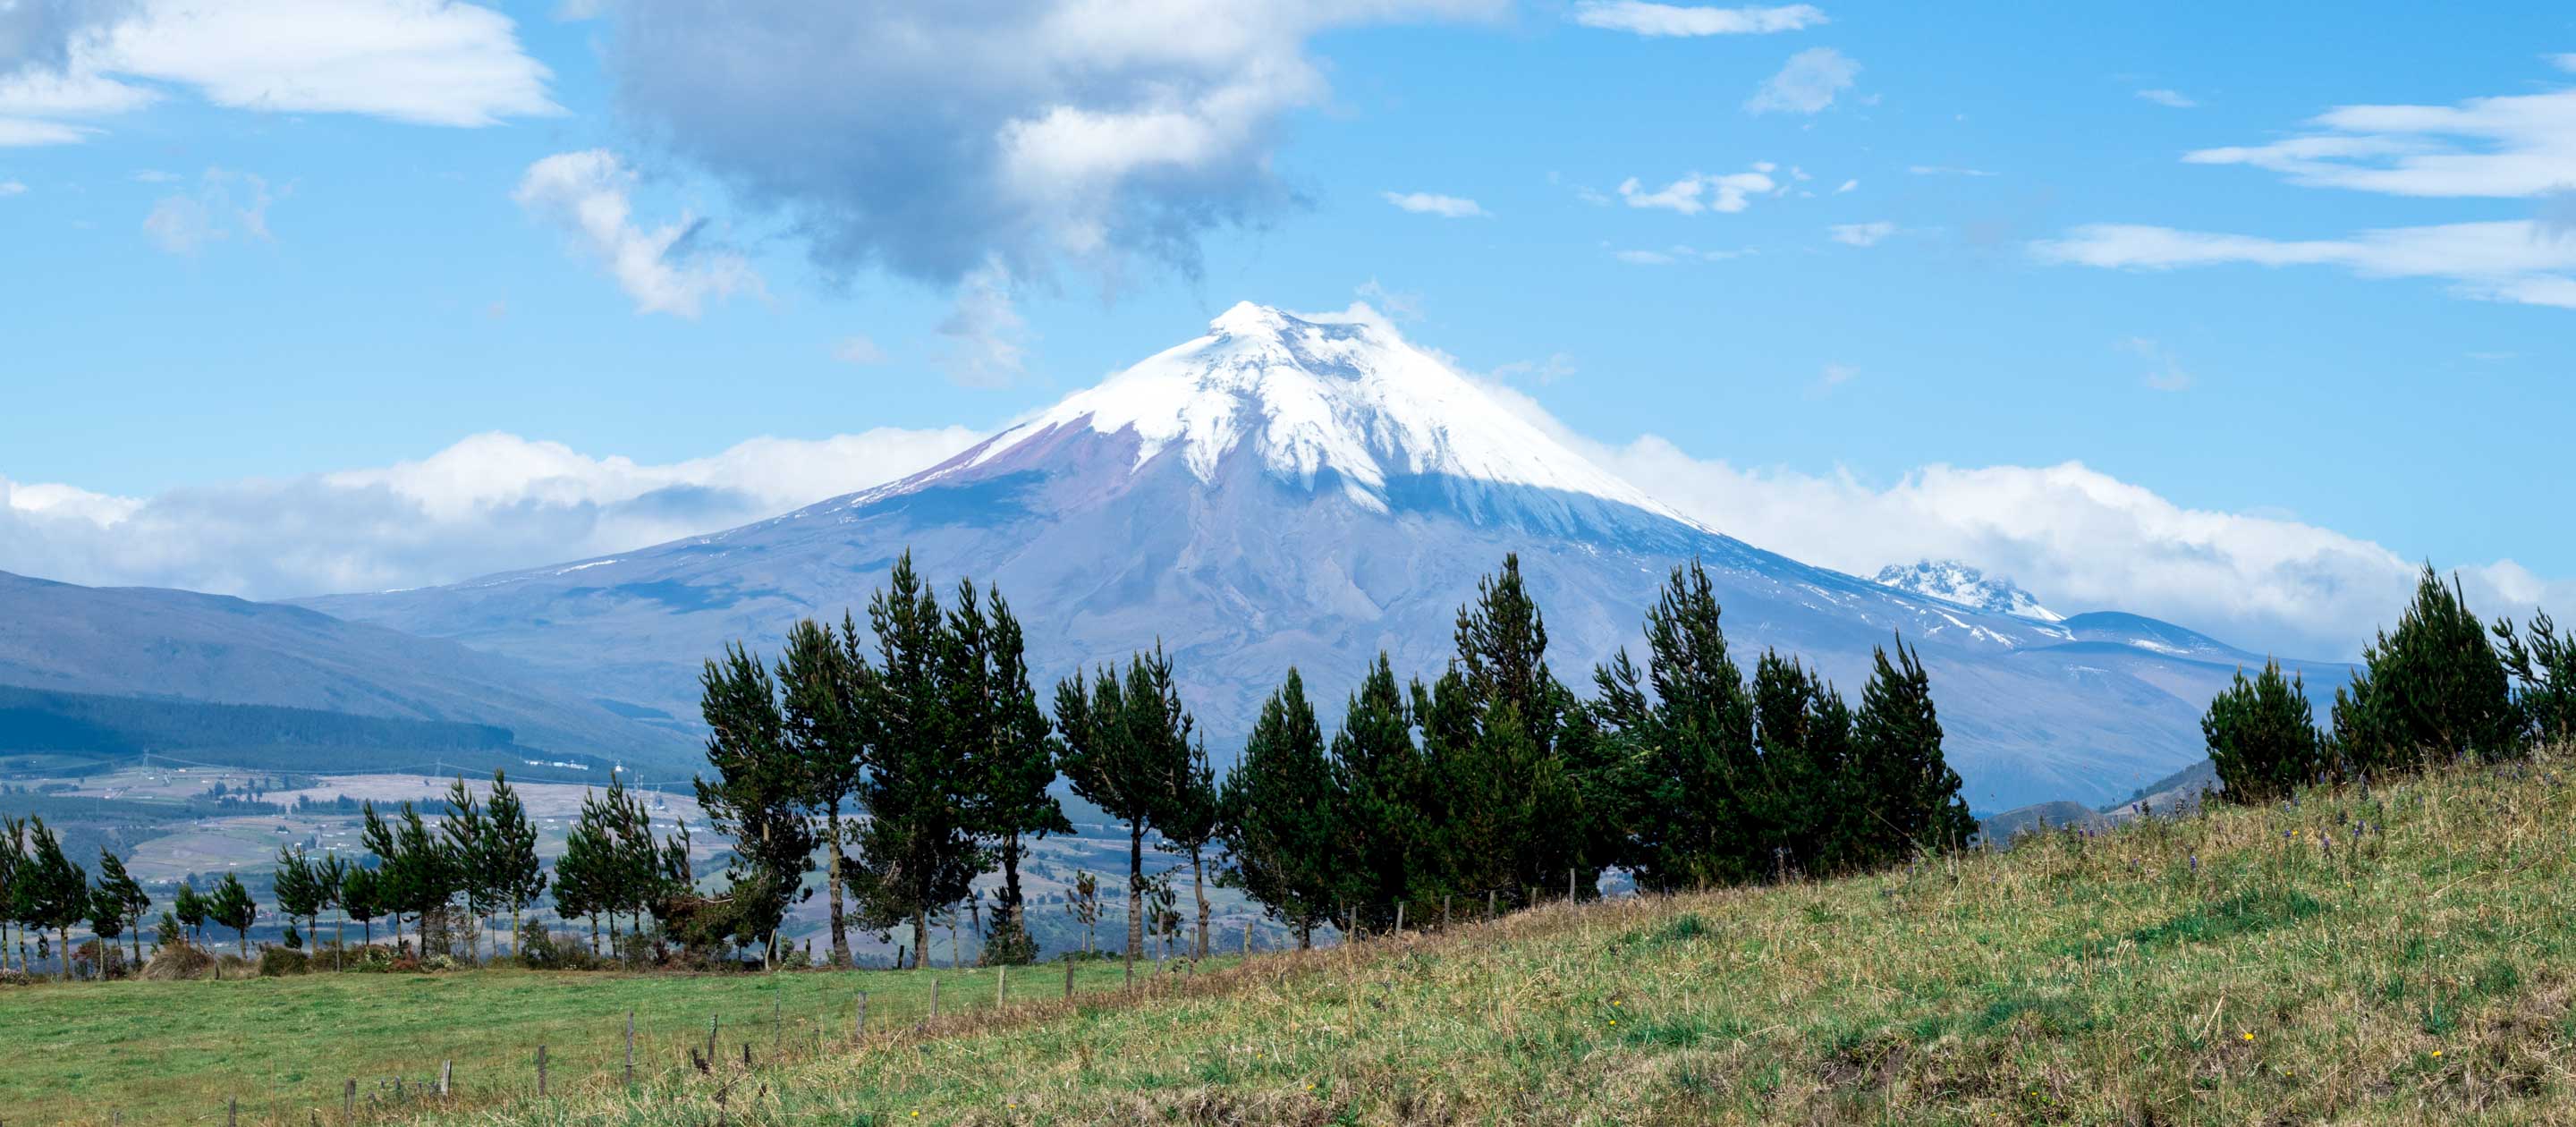 Volcano in the Cotopaxi province, Ecuador